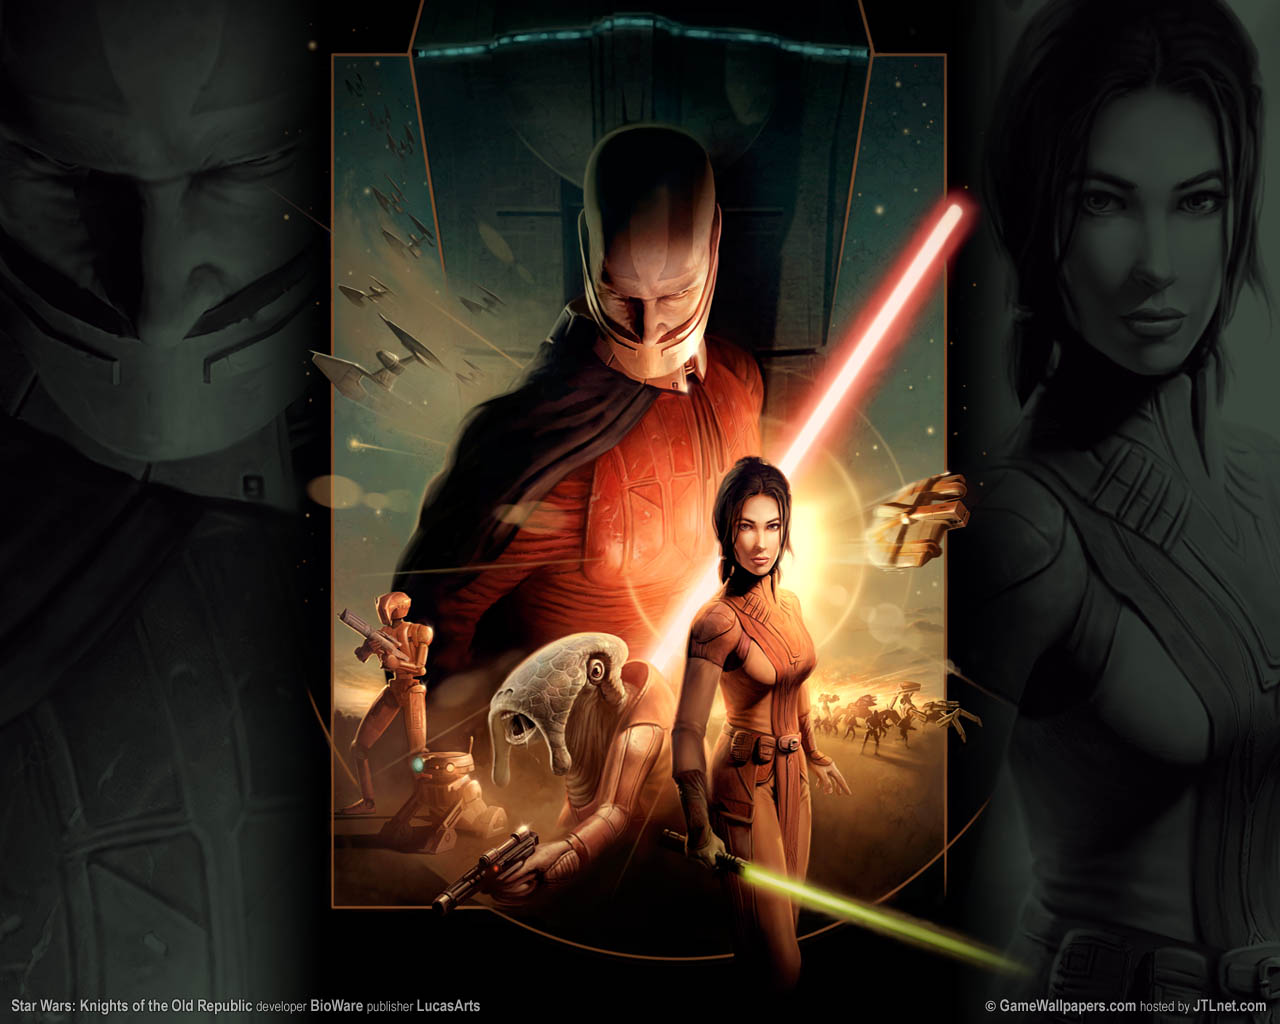 Star Wars: Knights of the Old Republic fond d'cran 02 1280x1024